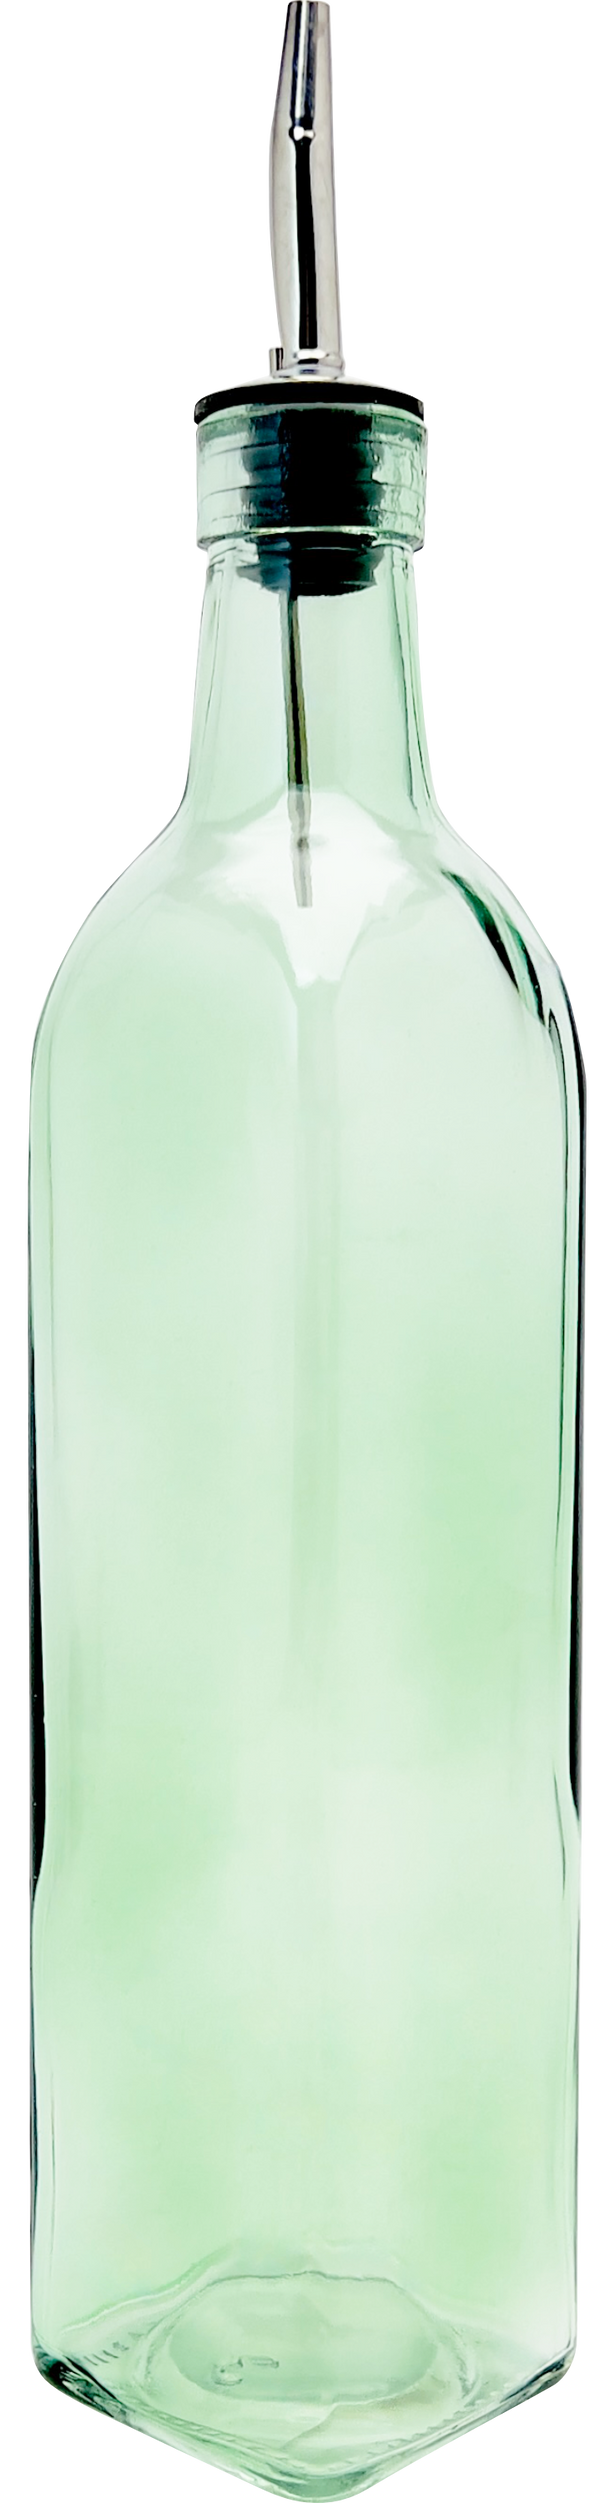 Classic Glass Olive Oil / Vinegar Bottle 8oz